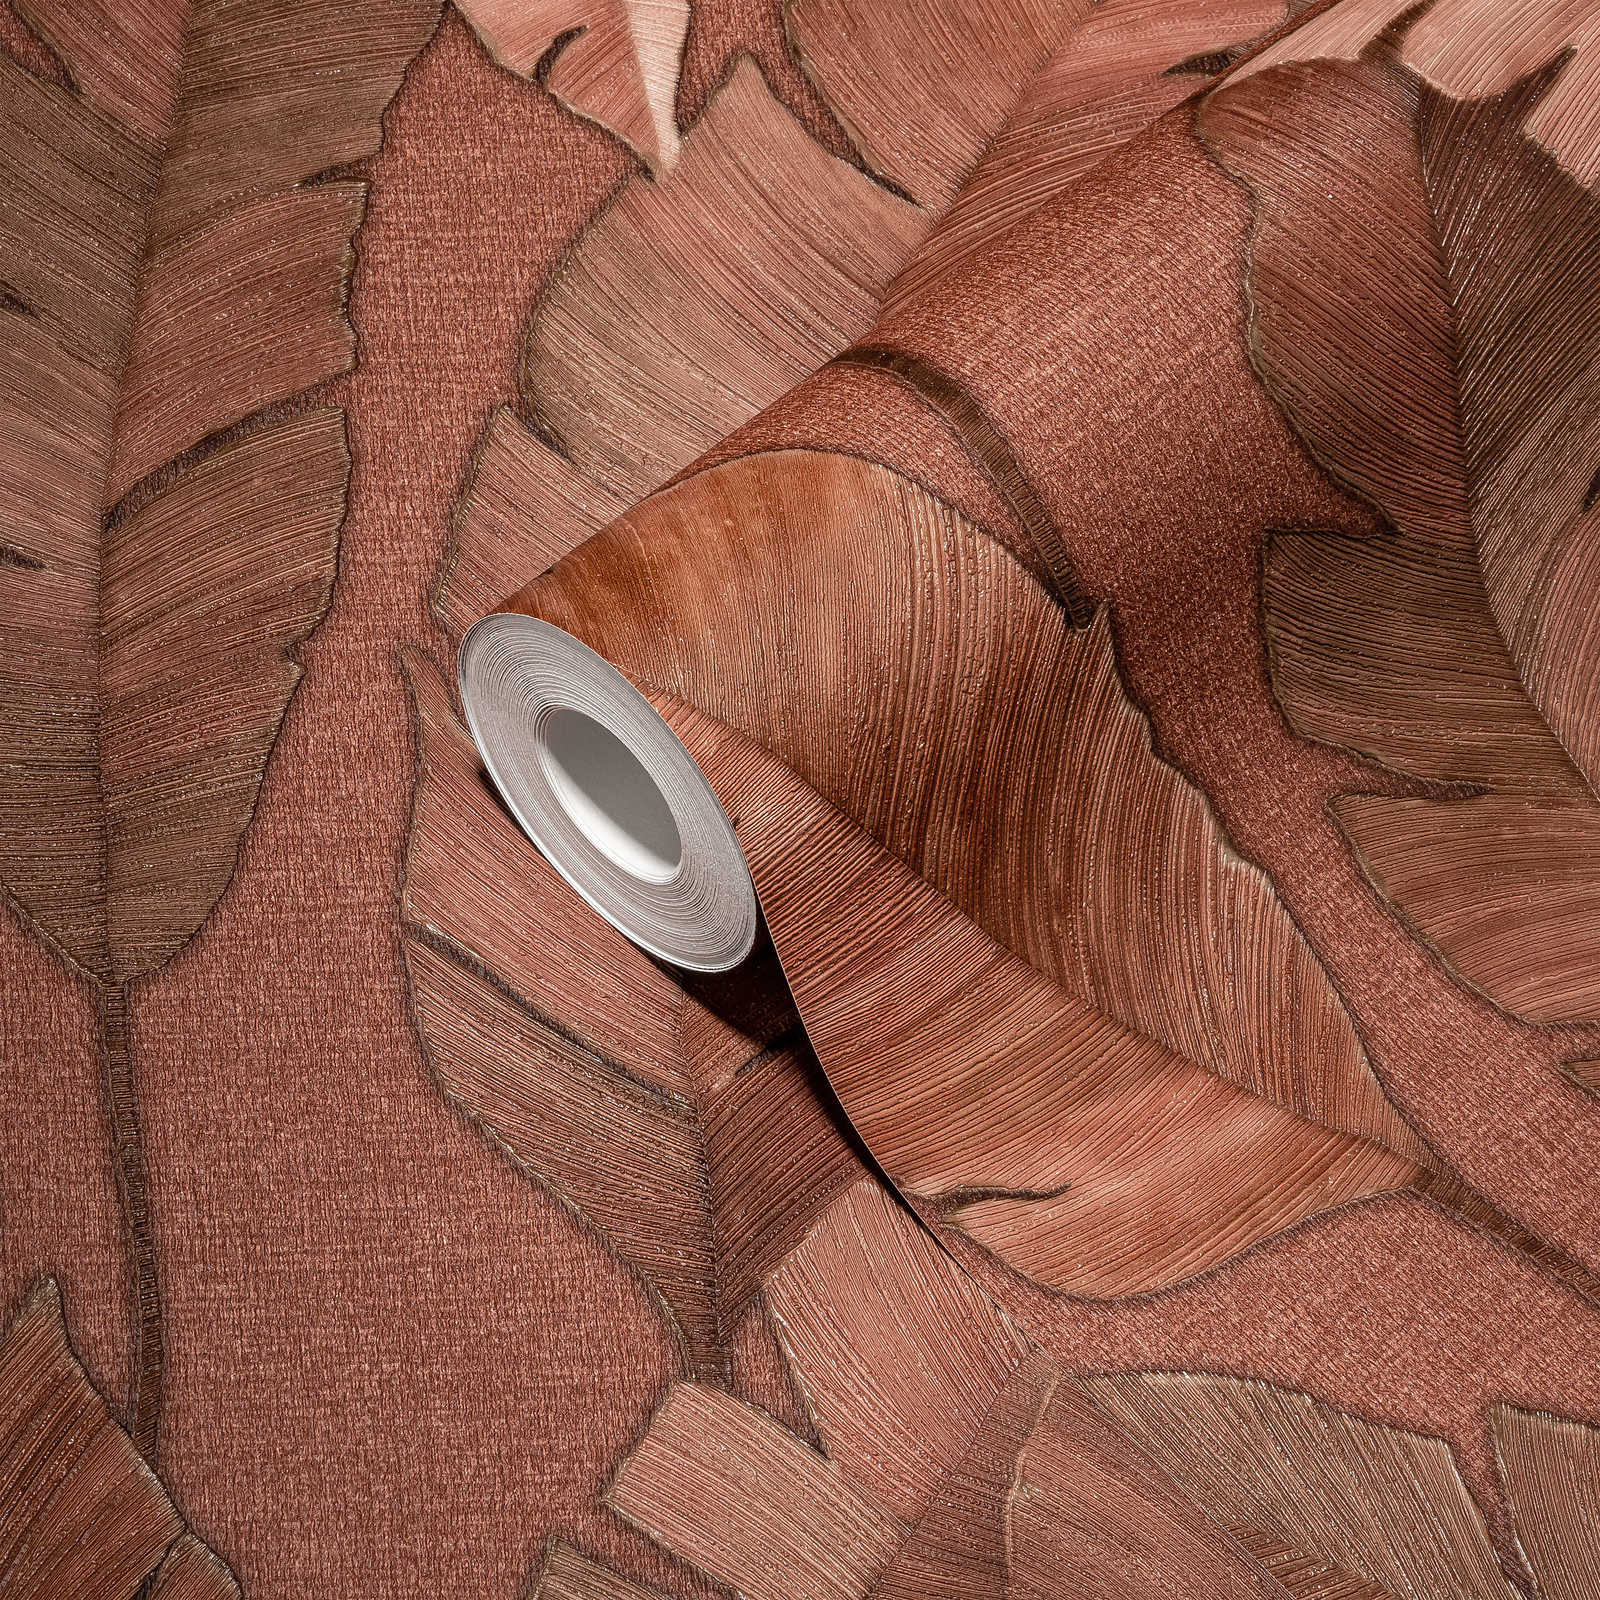             Papel pintado no tejido tropical con grandes hojas de palmera - marrón rojizo
        